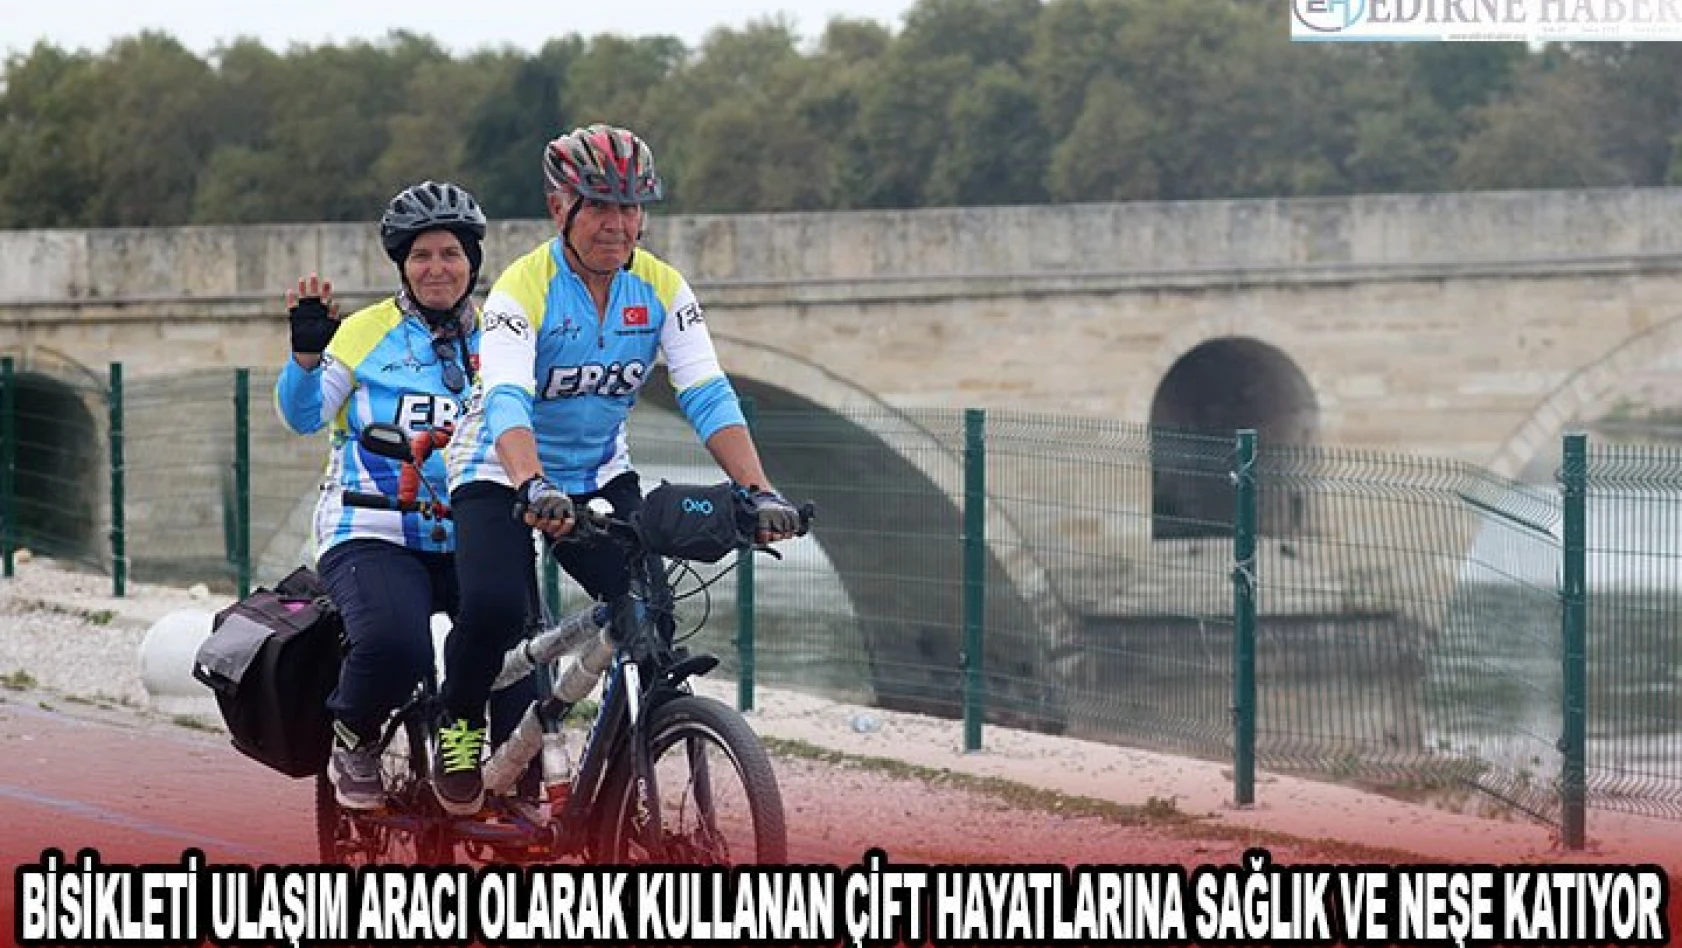 Bisikleti ulaşım aracı olarak kullanan çift hayatlarına sağlık ve neşe katıyor